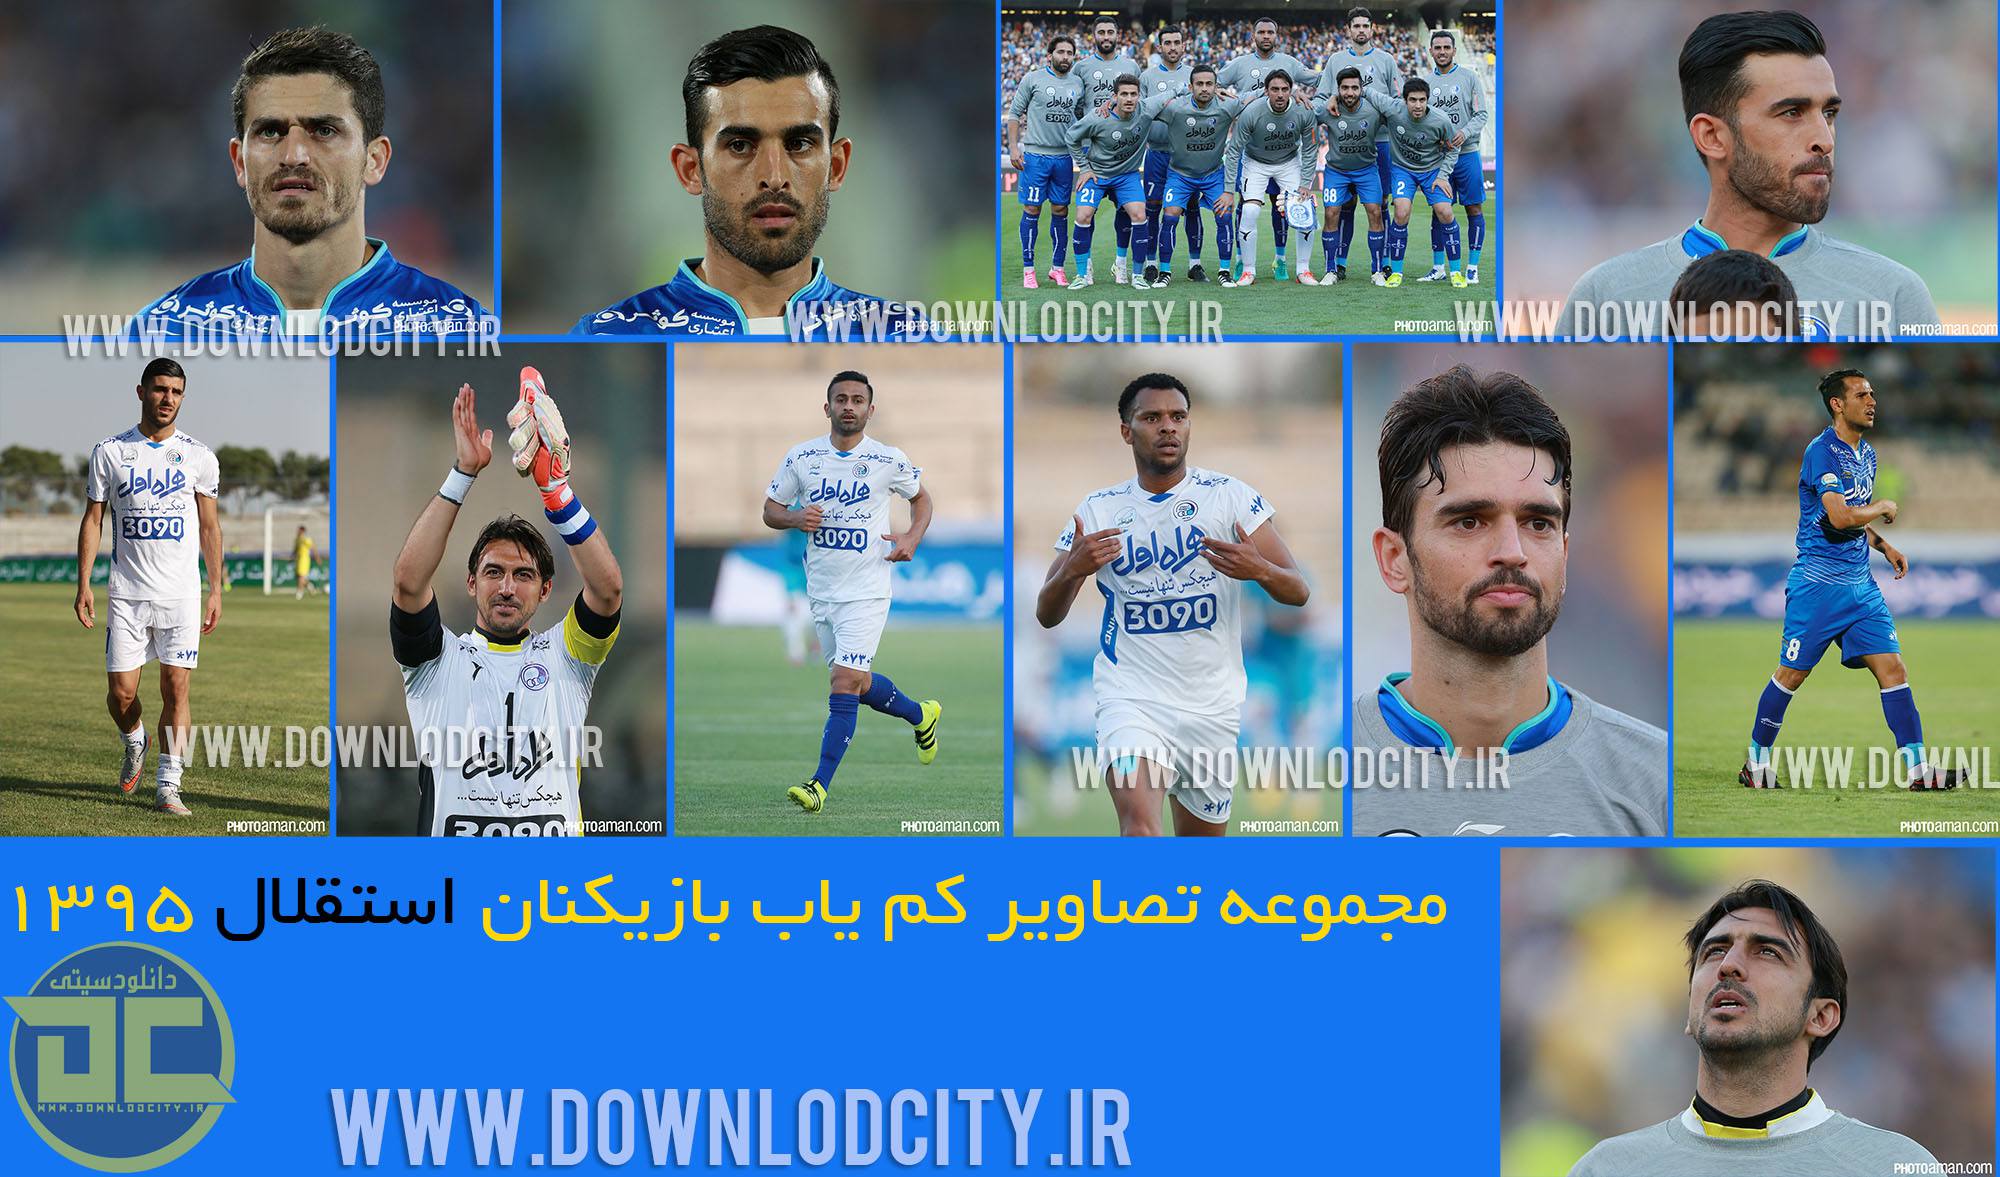 عکسهای بازیکنان استقلال تهران جدید